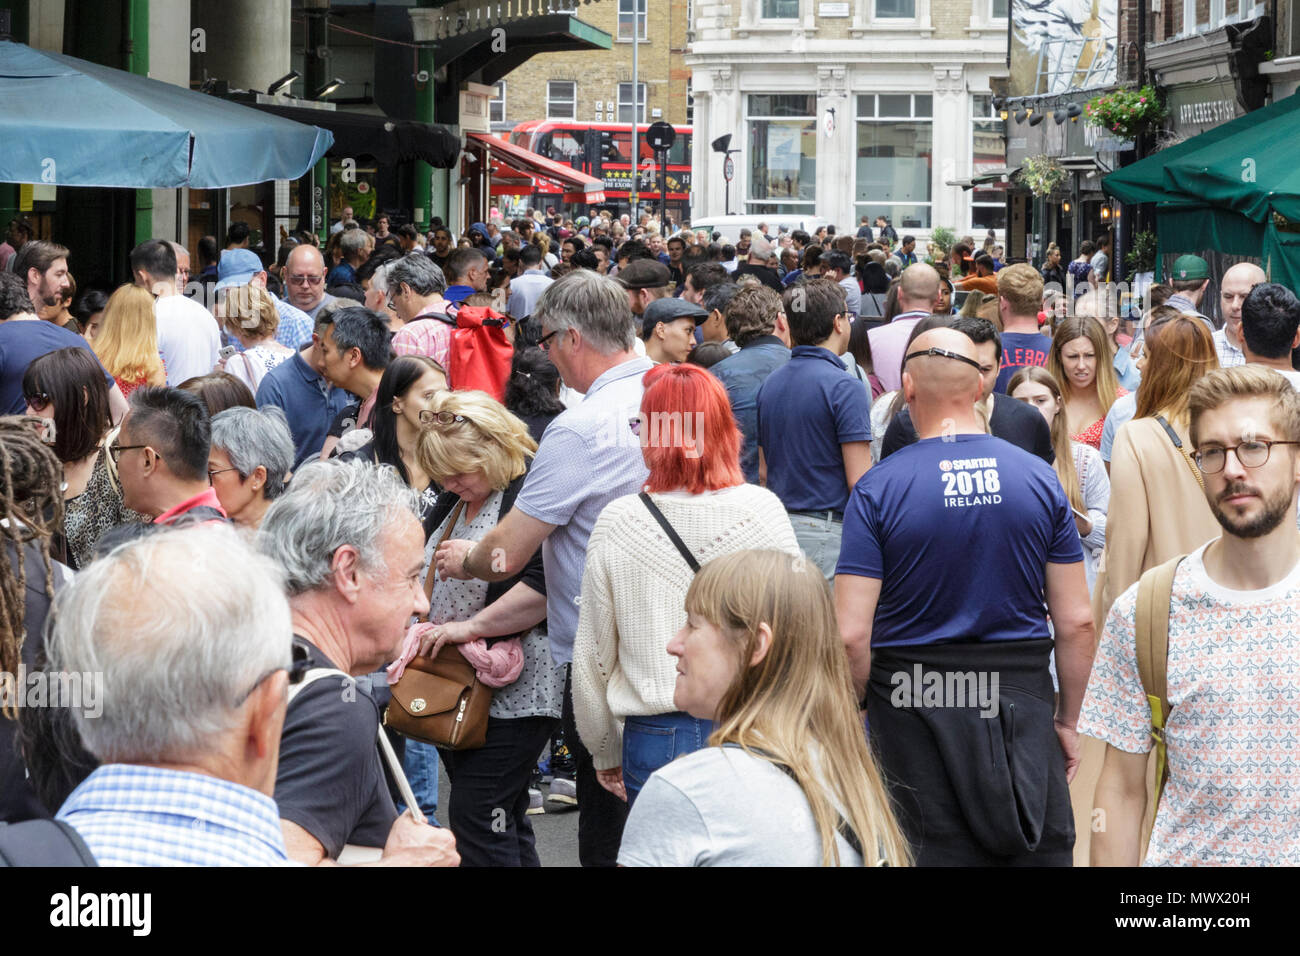 Borough Market, Londra, 2 giugno 2018. Occupato Stoney Street, che un anno fa ha visto i terroristi effettuando un accoltellato Sprea e uccidono persone innocenti. Borough Market, un anno dopo gli attentati di Londra London Bridge e di Borough Market, che ha provocato la morte di otto persone e il ferimento di 48. Il mercato, che sarà chiusa sul reale anniversario giorno (3 giugno) ha una intensa giornata di negoziazione con i londinesi e turisti che si godono i suoi molti alimenti, bevande e prodotti freschi si spegne. Credito: Imageplotter News e sport/Alamy Live News Foto Stock